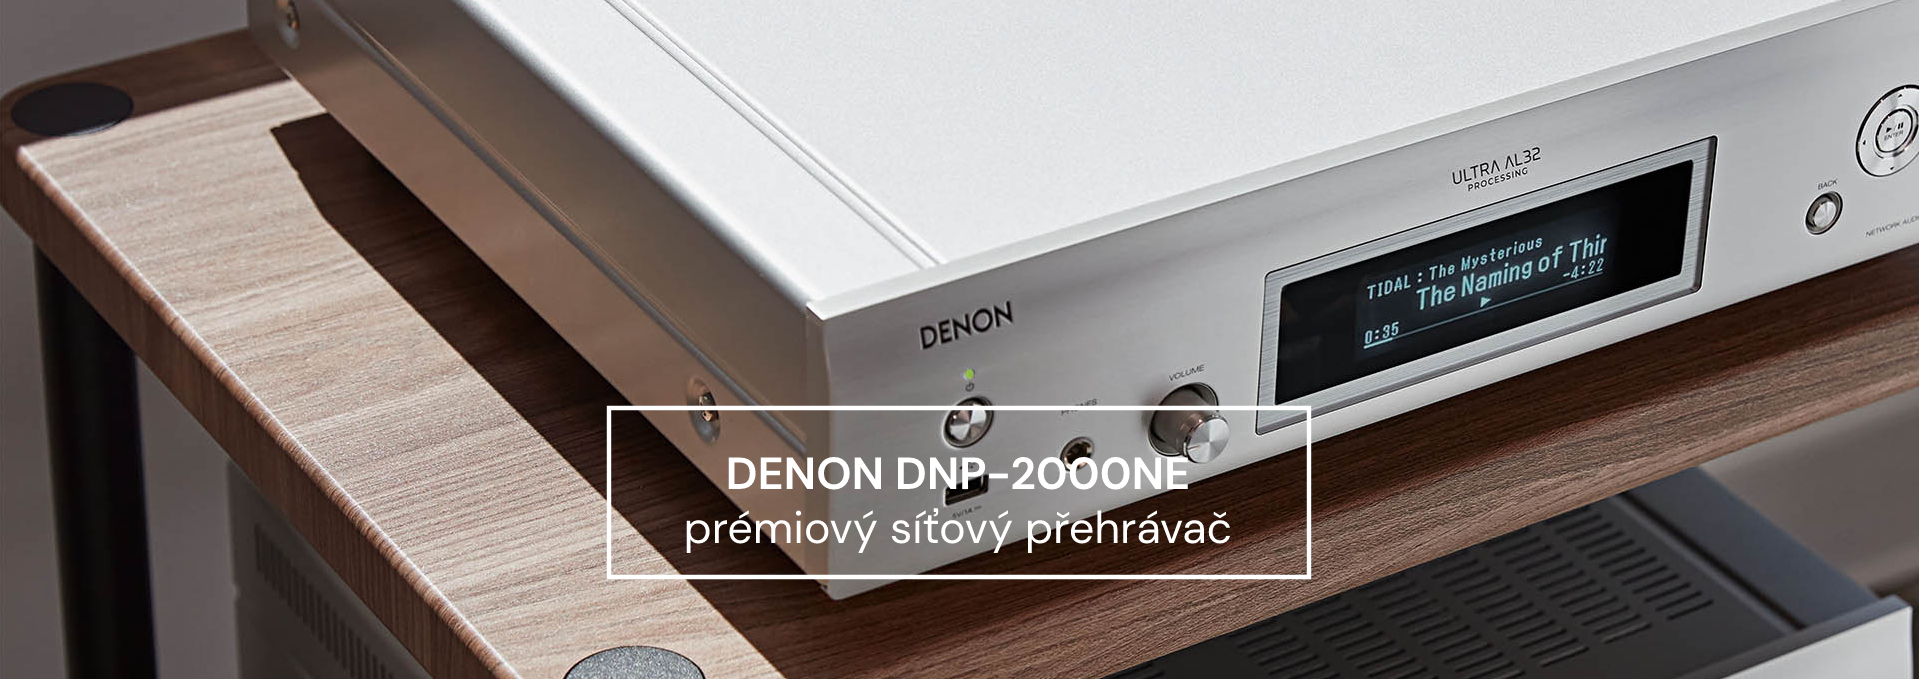 Denon DNP-2000NE